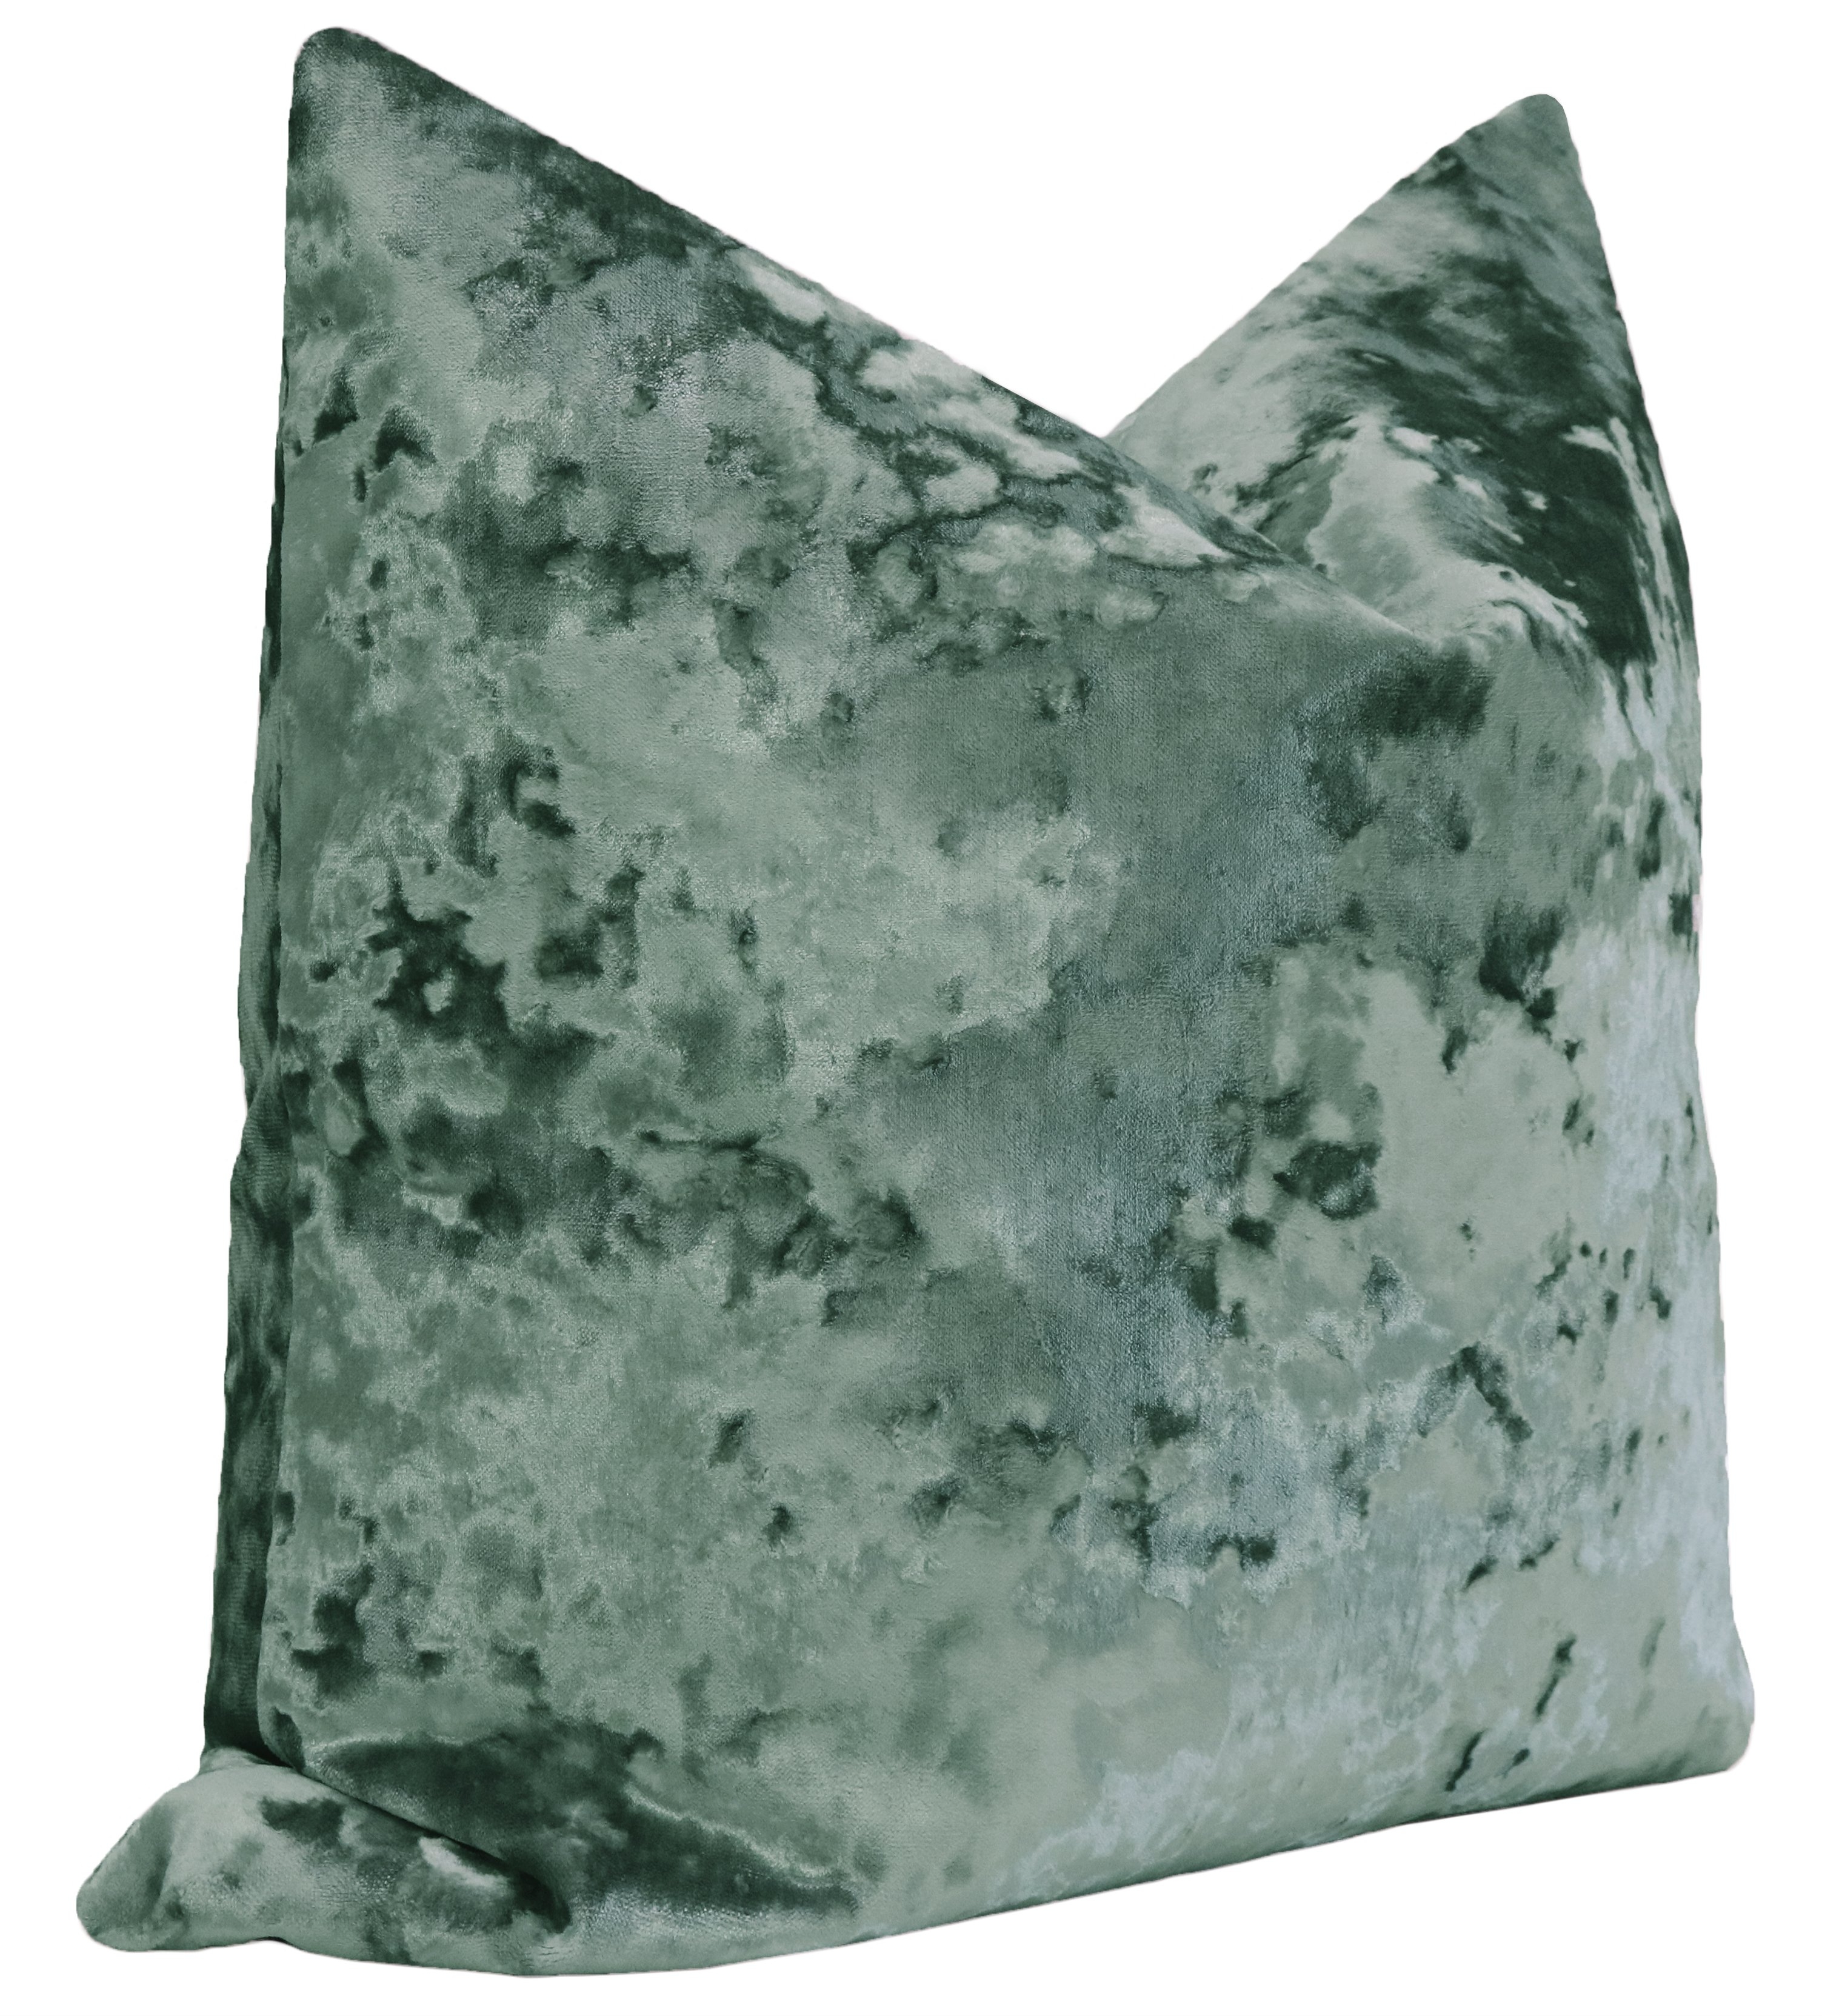 Lavish Velvet Pillow Cover, Aegean, 20" x 20" - Image 1